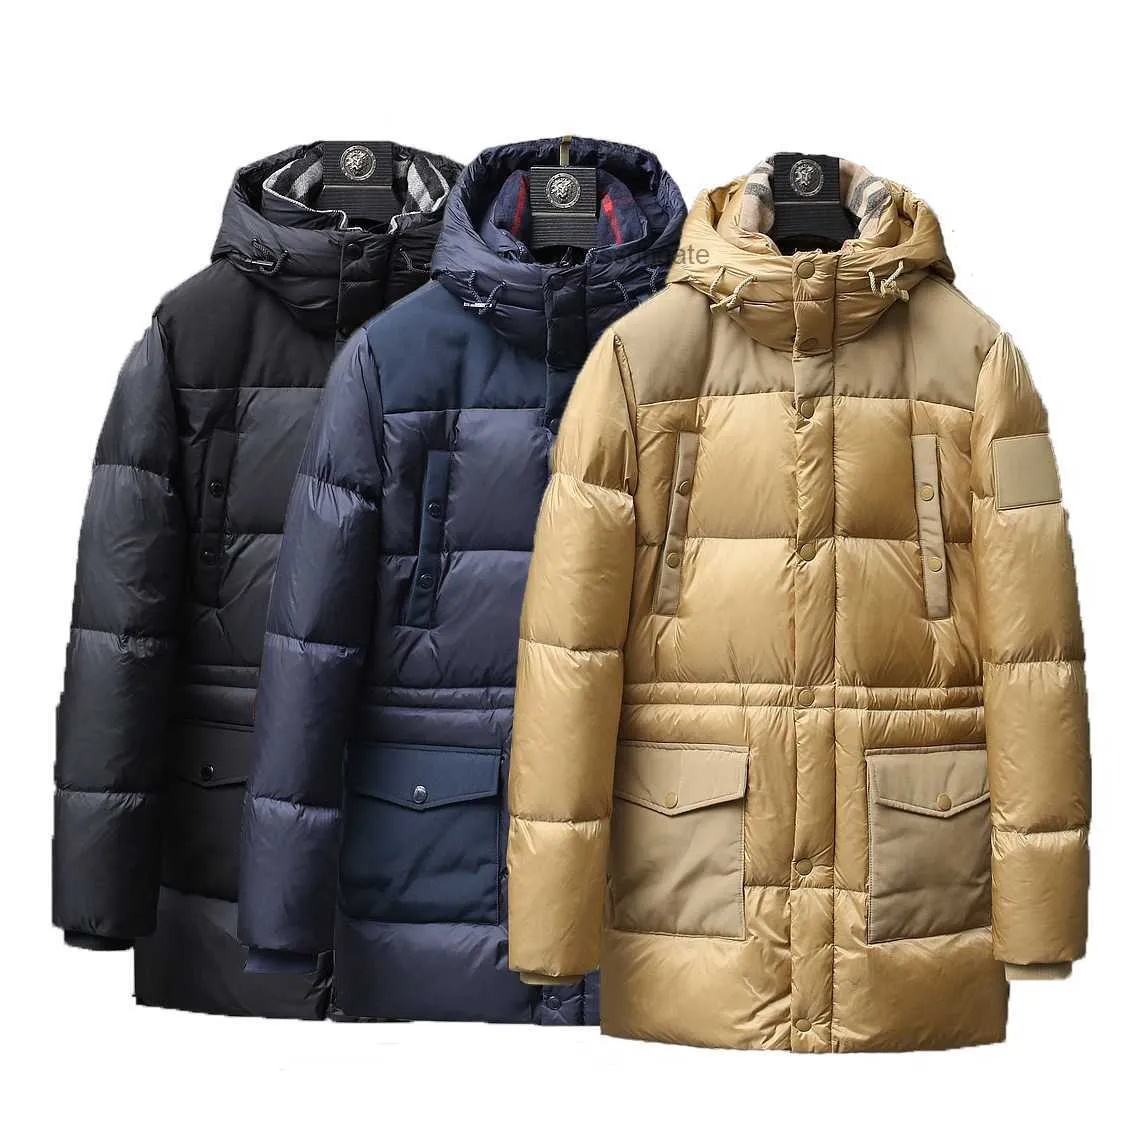 Diseñador de estilo británico Luxury Mens Long Down Jacket Canada North Winter Pathwork Patchwork Fleece Collar Coat Jackets Popless Clothing Outdoor Men M-3xl